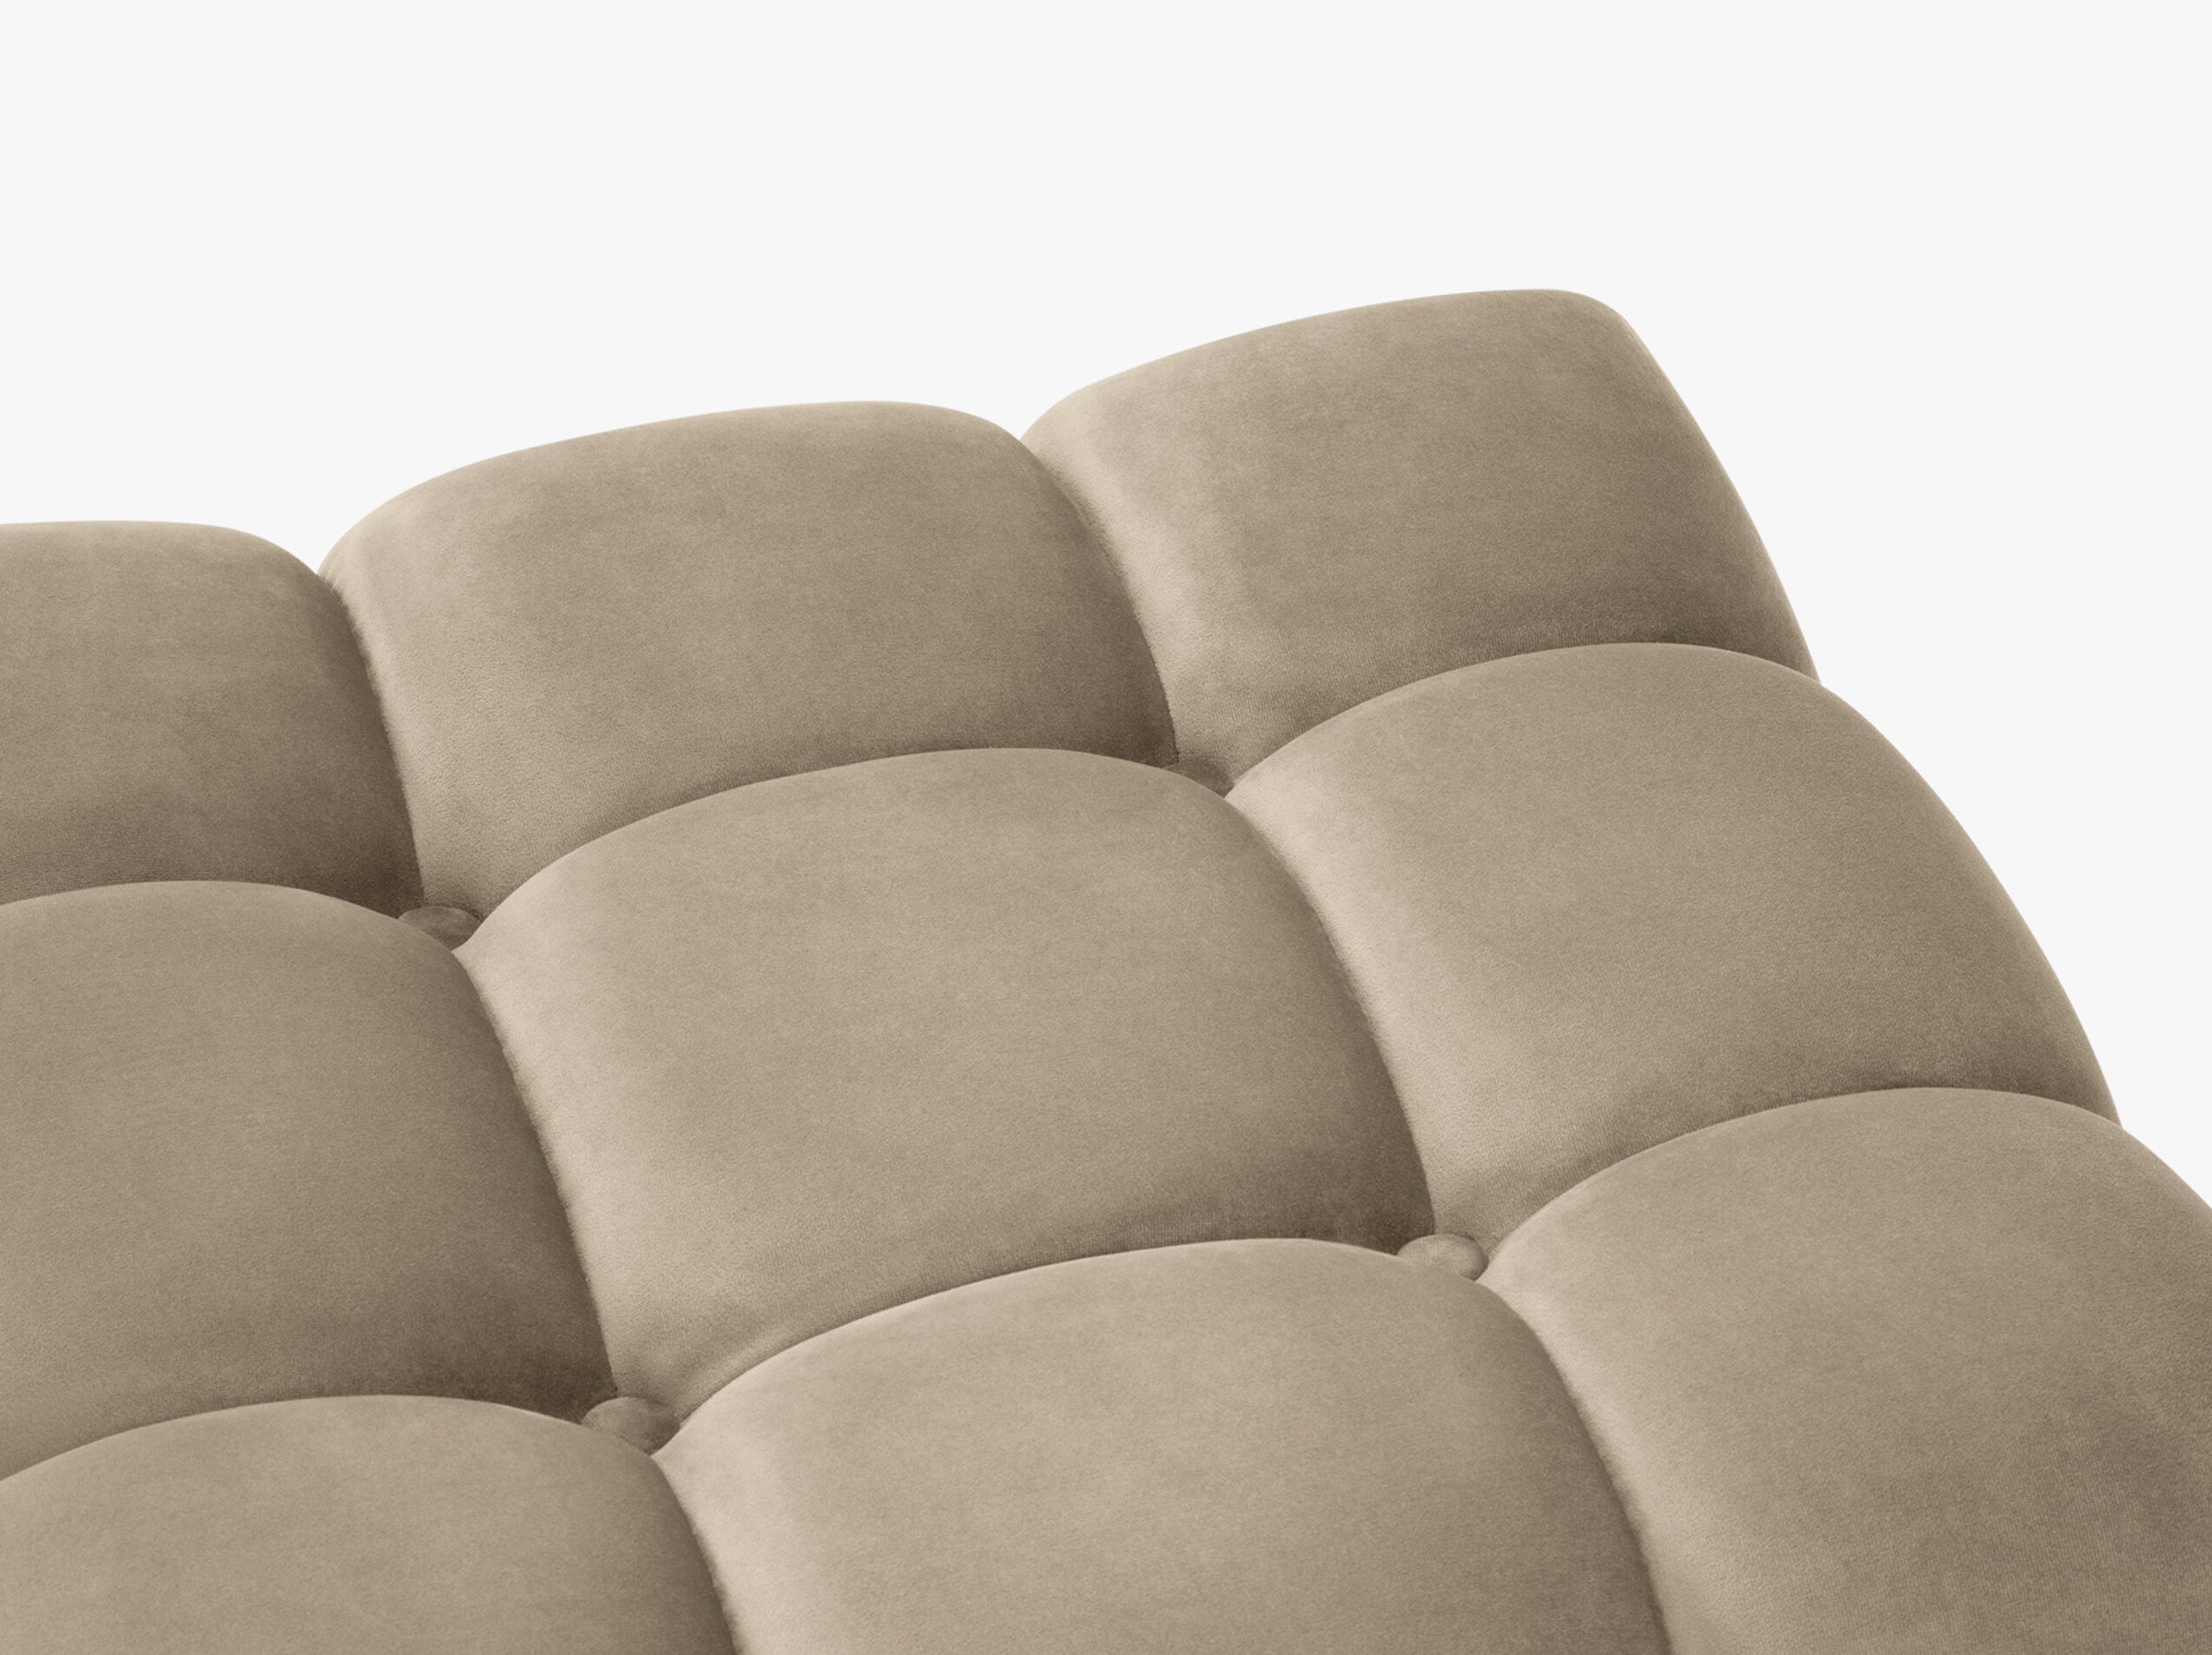 Karoo sofas velvet cappuccino